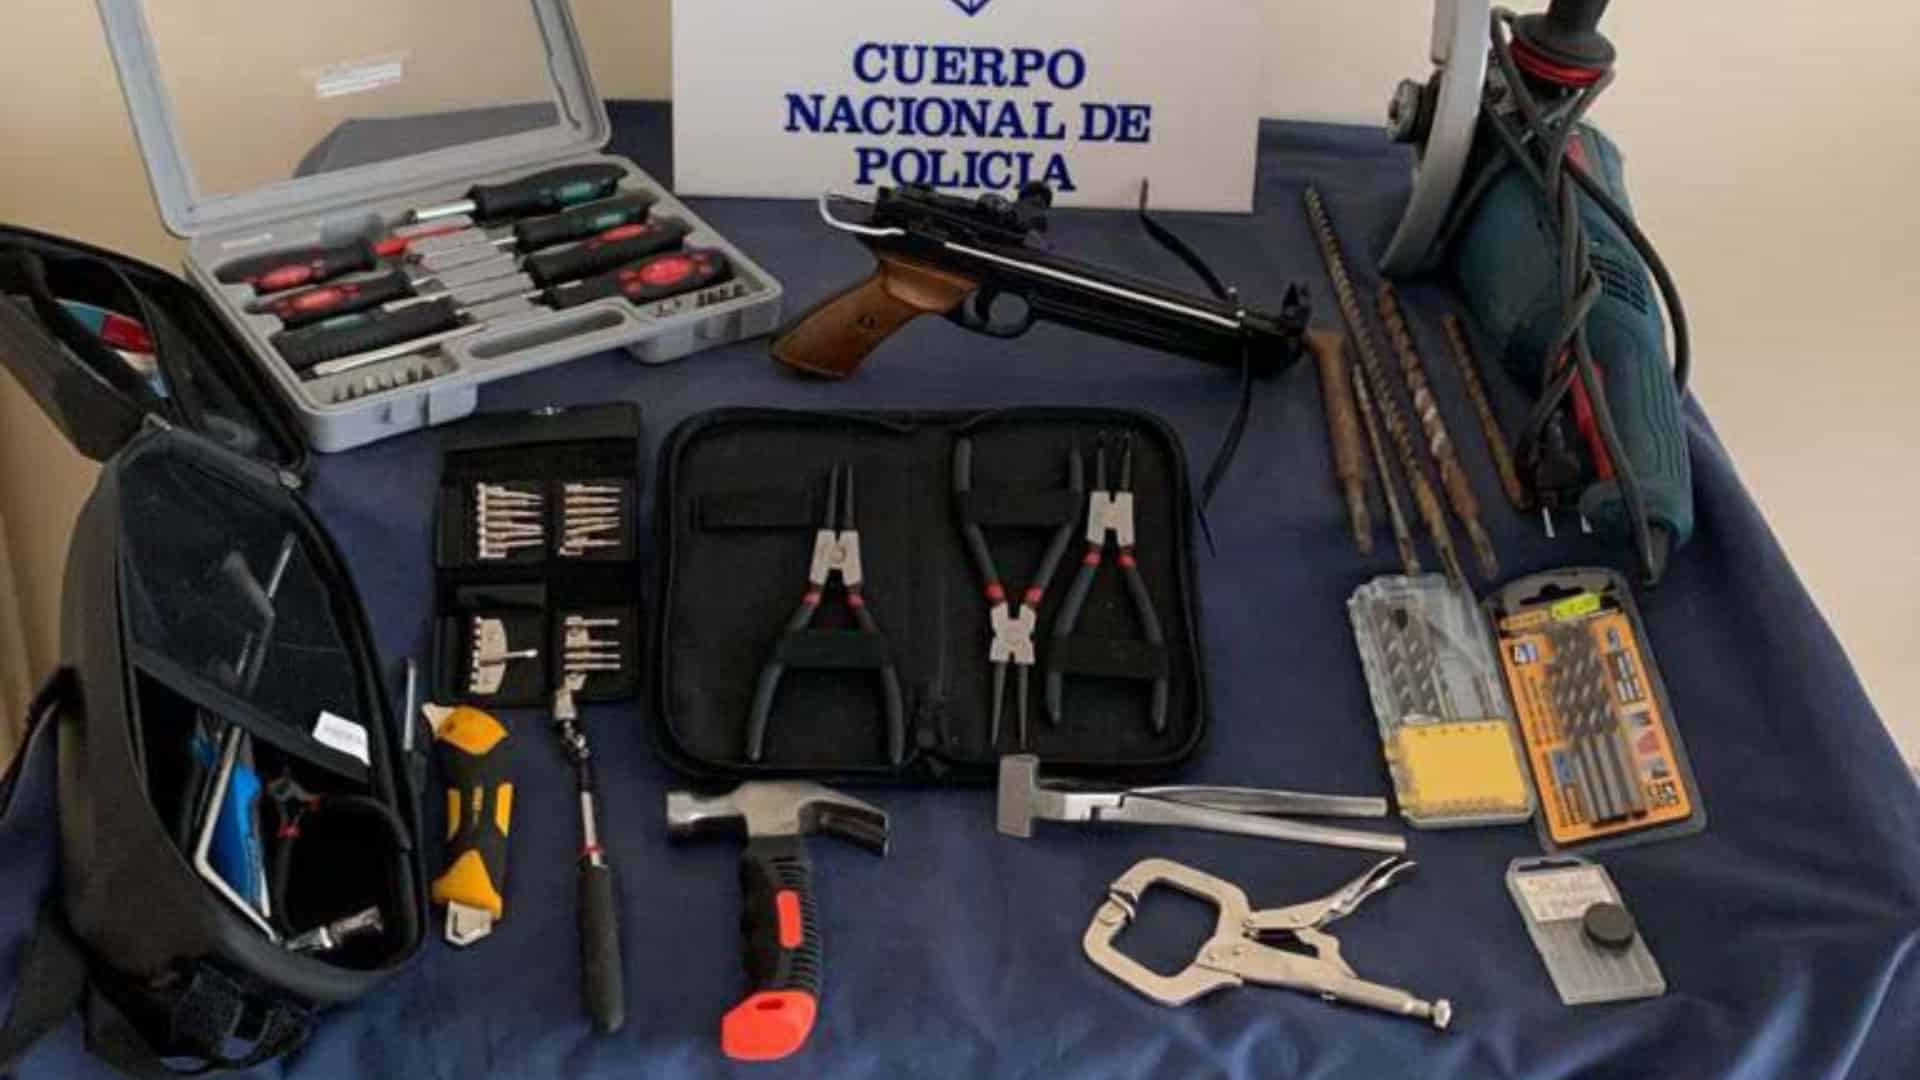 El material incautado en las operaciones contra el tráfico de drogas en A Coruña | POLICÍA NACIONAL